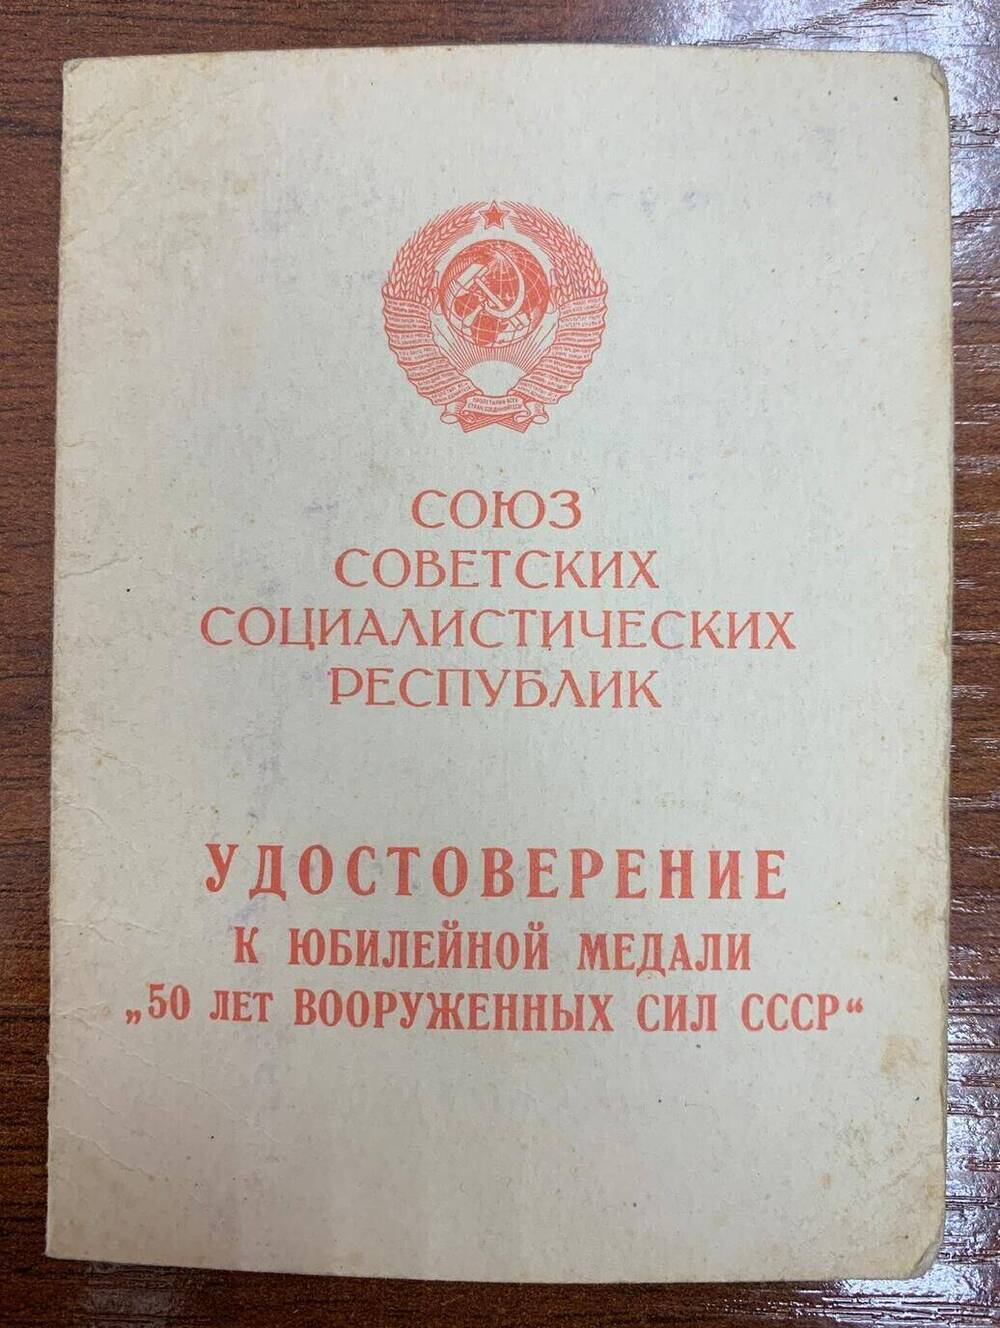 Удостоверение к медали 50 лет вооружённых сил СССР выдано Павлину Г.В.